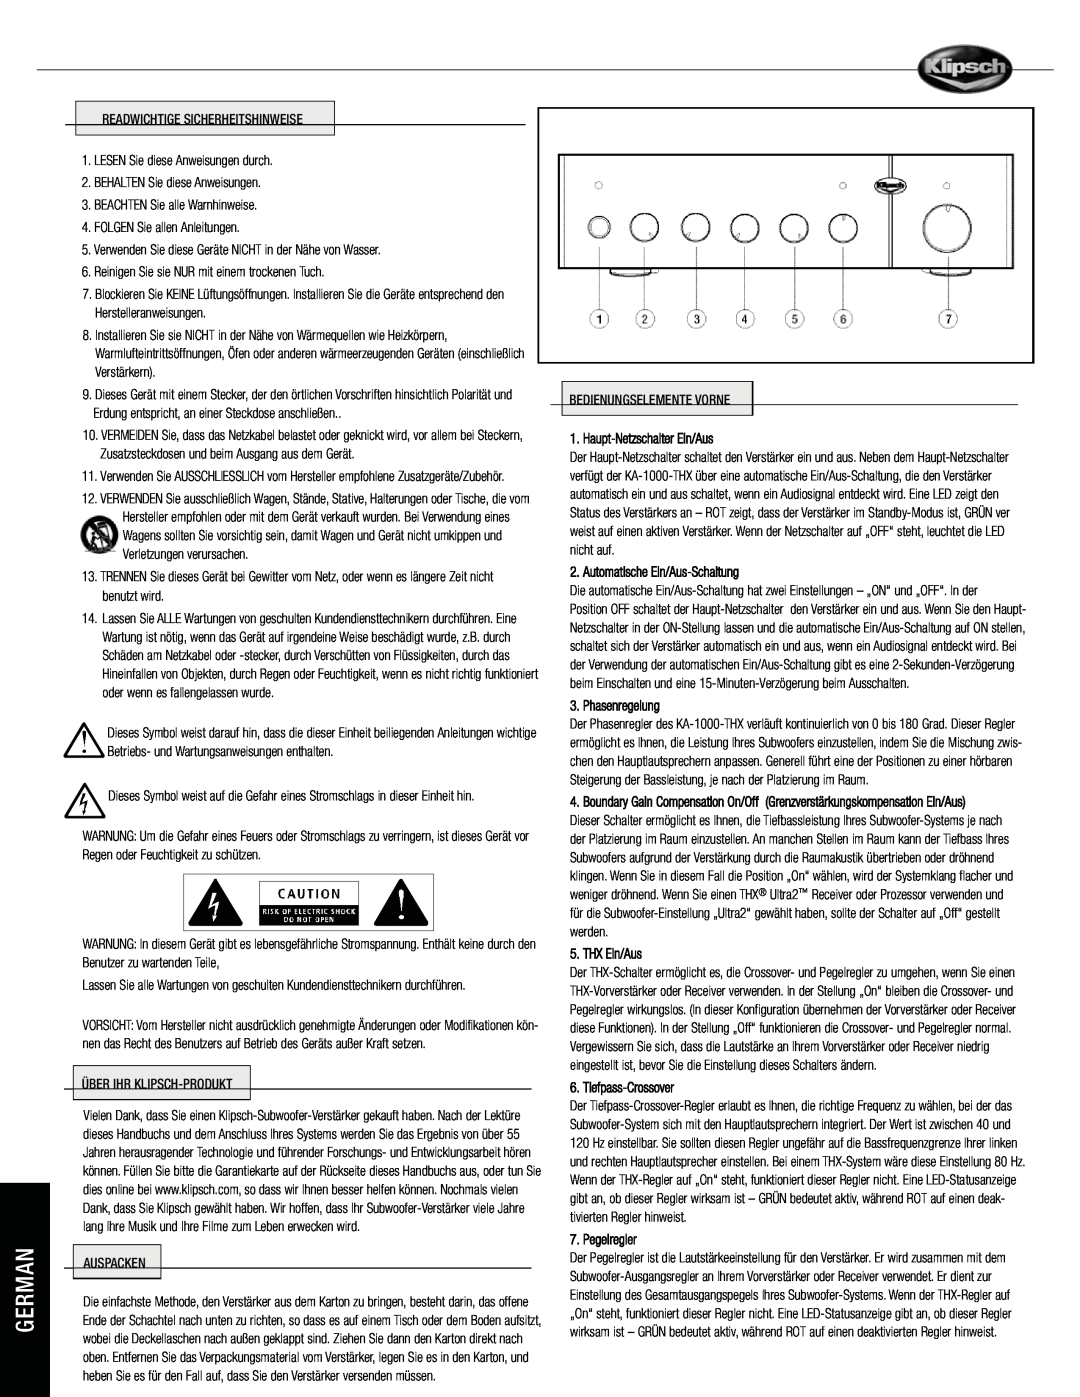 Klipsch KA-1000-THX Haupt-NetzschalterEin/Aus, Automatische Ein/Aus-Schaltung, Phasenregelung, THX Ein/Aus, Pegelregler 